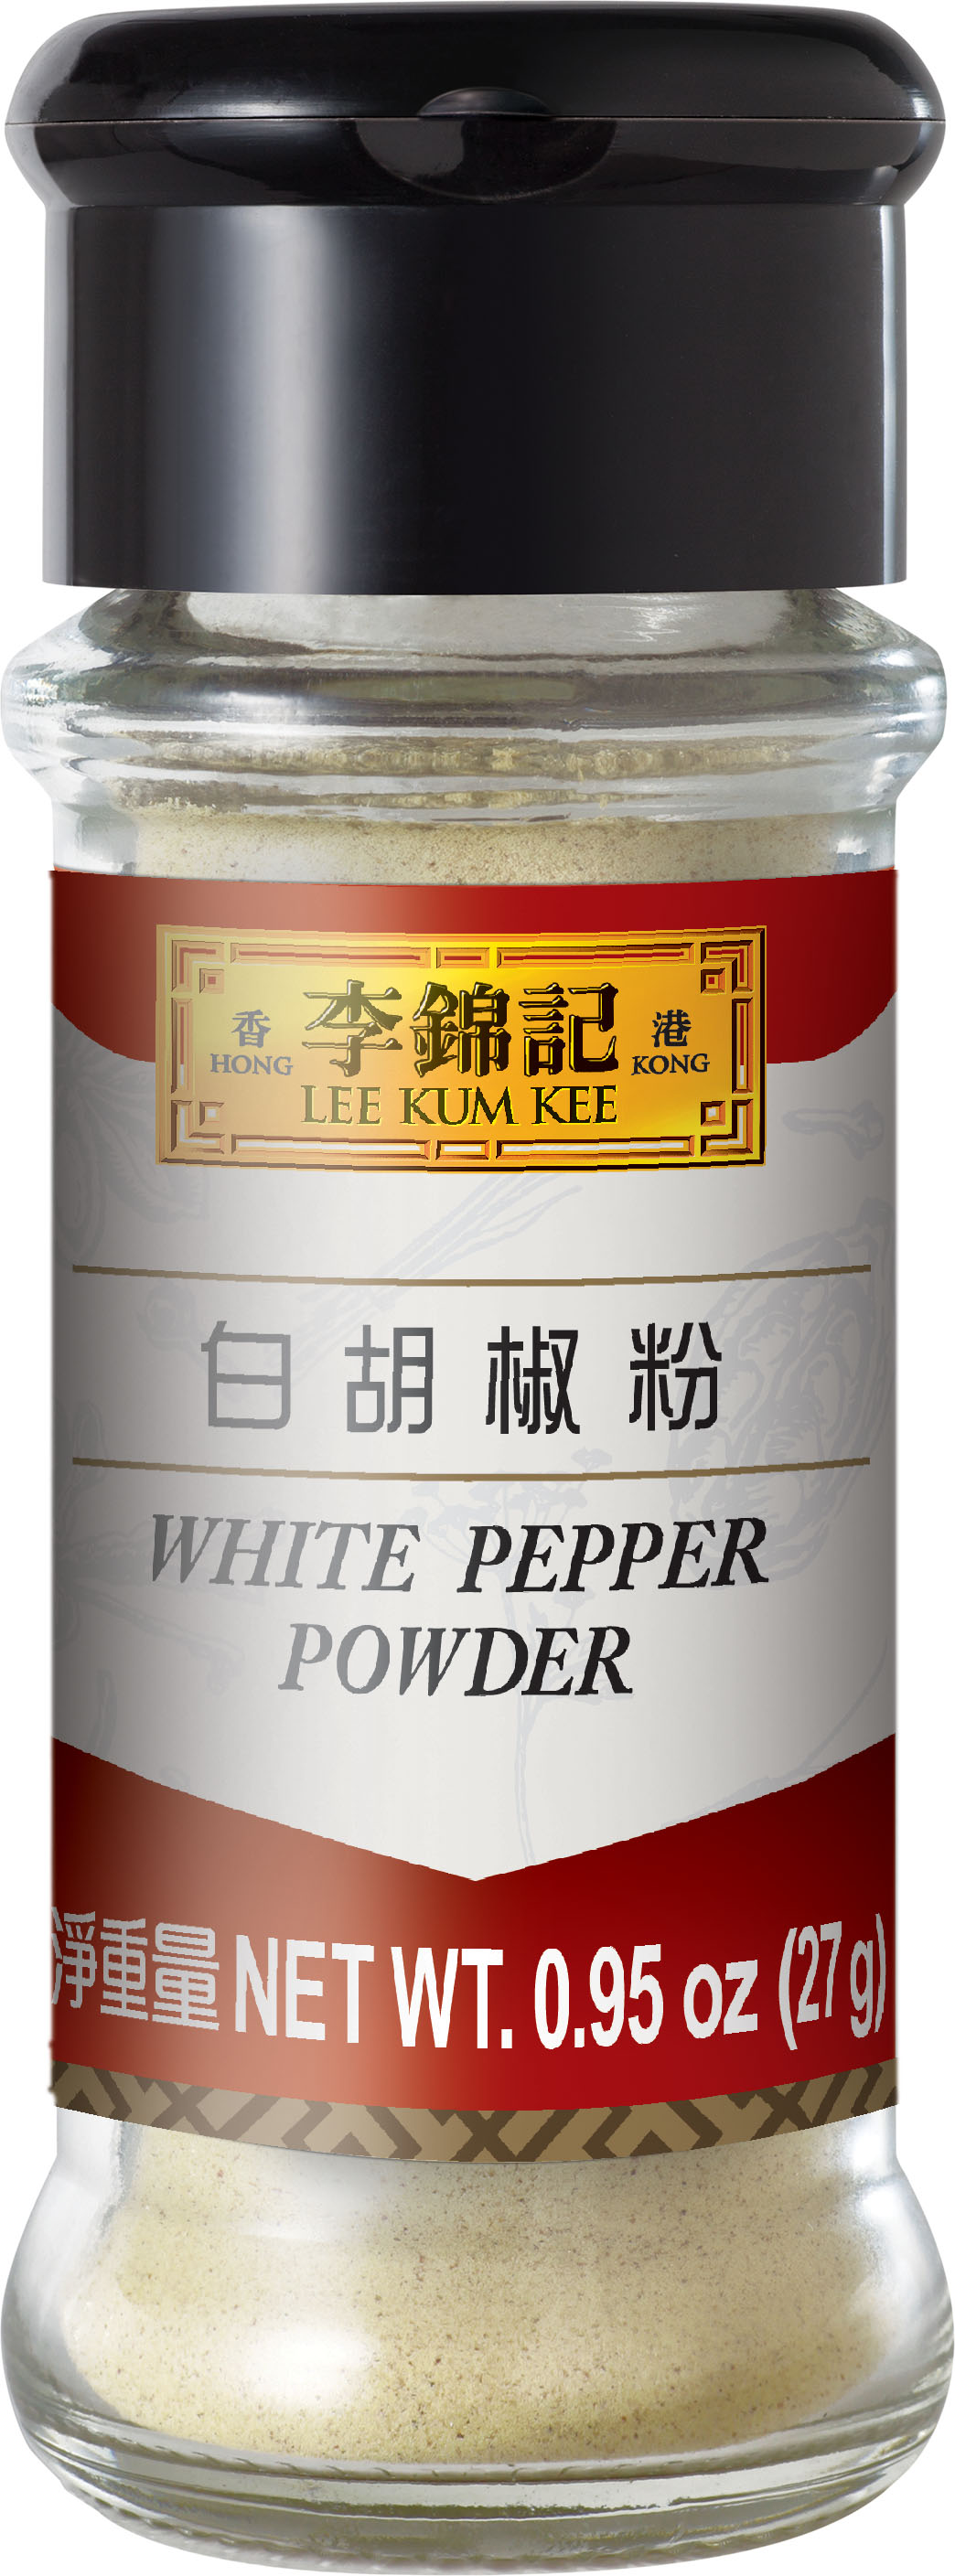 白胡椒粉 0.95 oz (27 g), 瓶裝